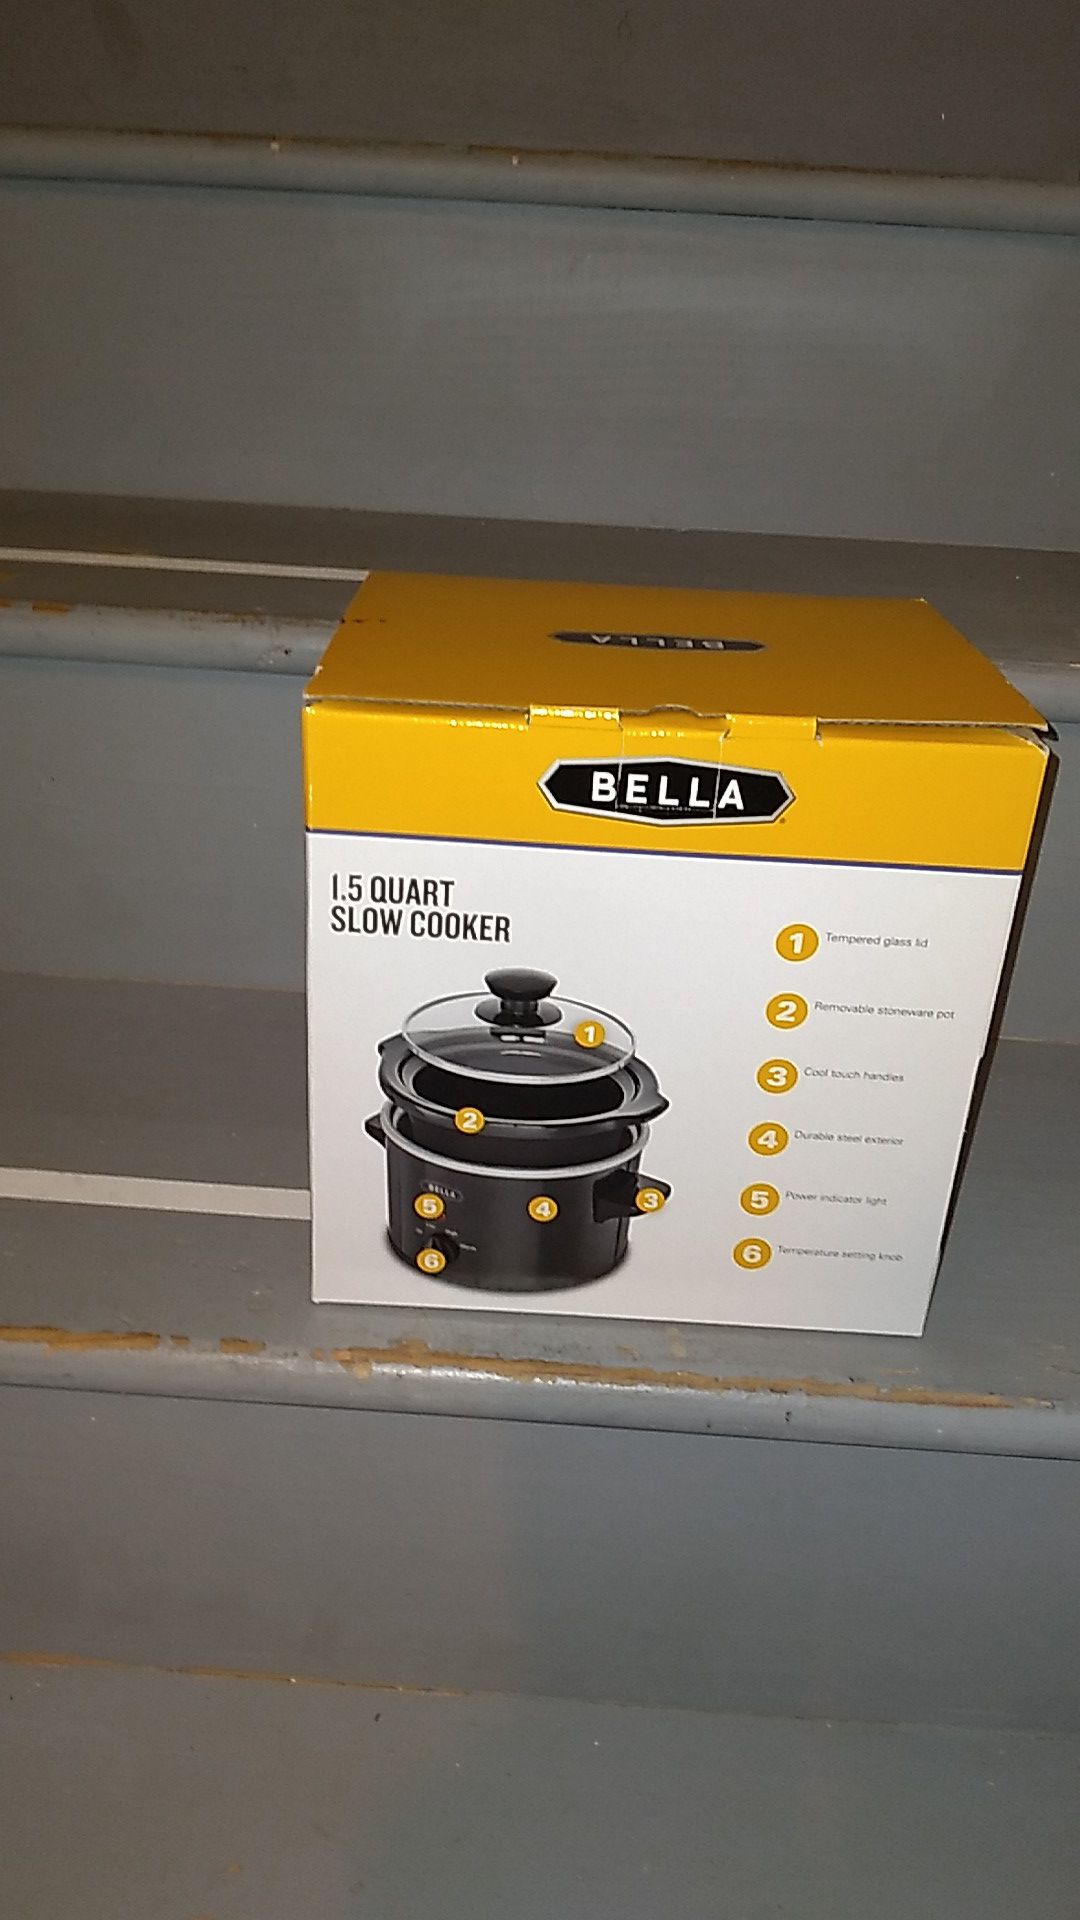 BELLA 1.5 QUART SLOW COOKER